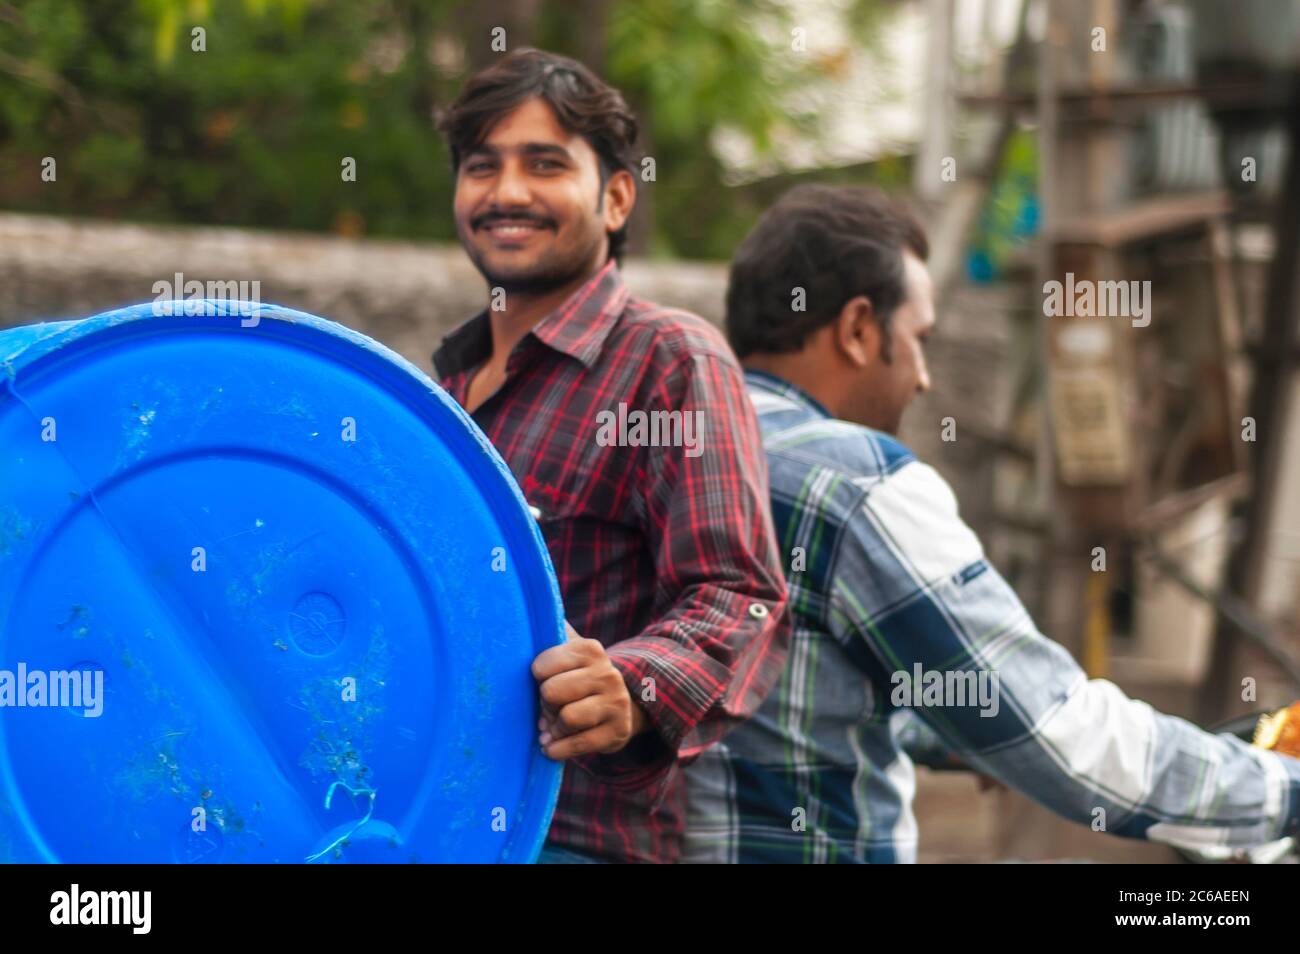 Ein indischer Mann, der mit einer Trommel rückwärts auf dem Sozius reitet. Dies ist ein Beispiel für 'jugaad' oder eine nicht-konventionelle Lösung, um eine Trommel auf einem Fahrrad zu tragen. Stockfoto